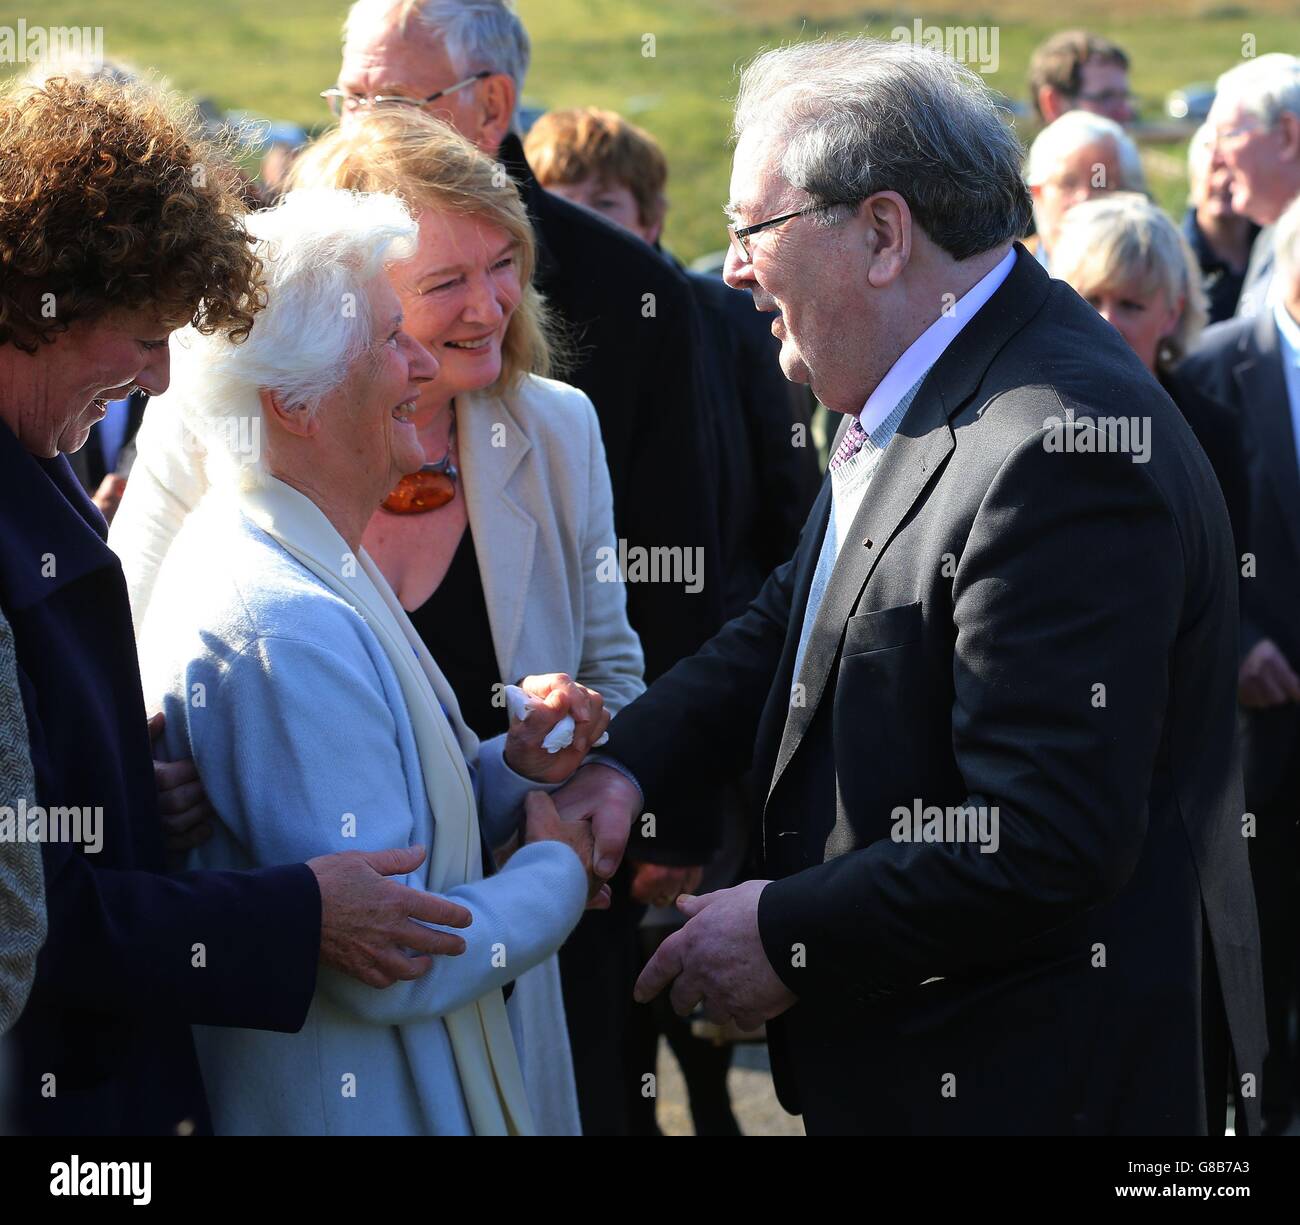 Anne, vedova di Brian Friel (seconda a sinistra), parla con l'ex leader della SDLP John Hume, durante il funerale del drammaturgo irlandese al Cimitero di Glenties in Co Donegal. Foto Stock